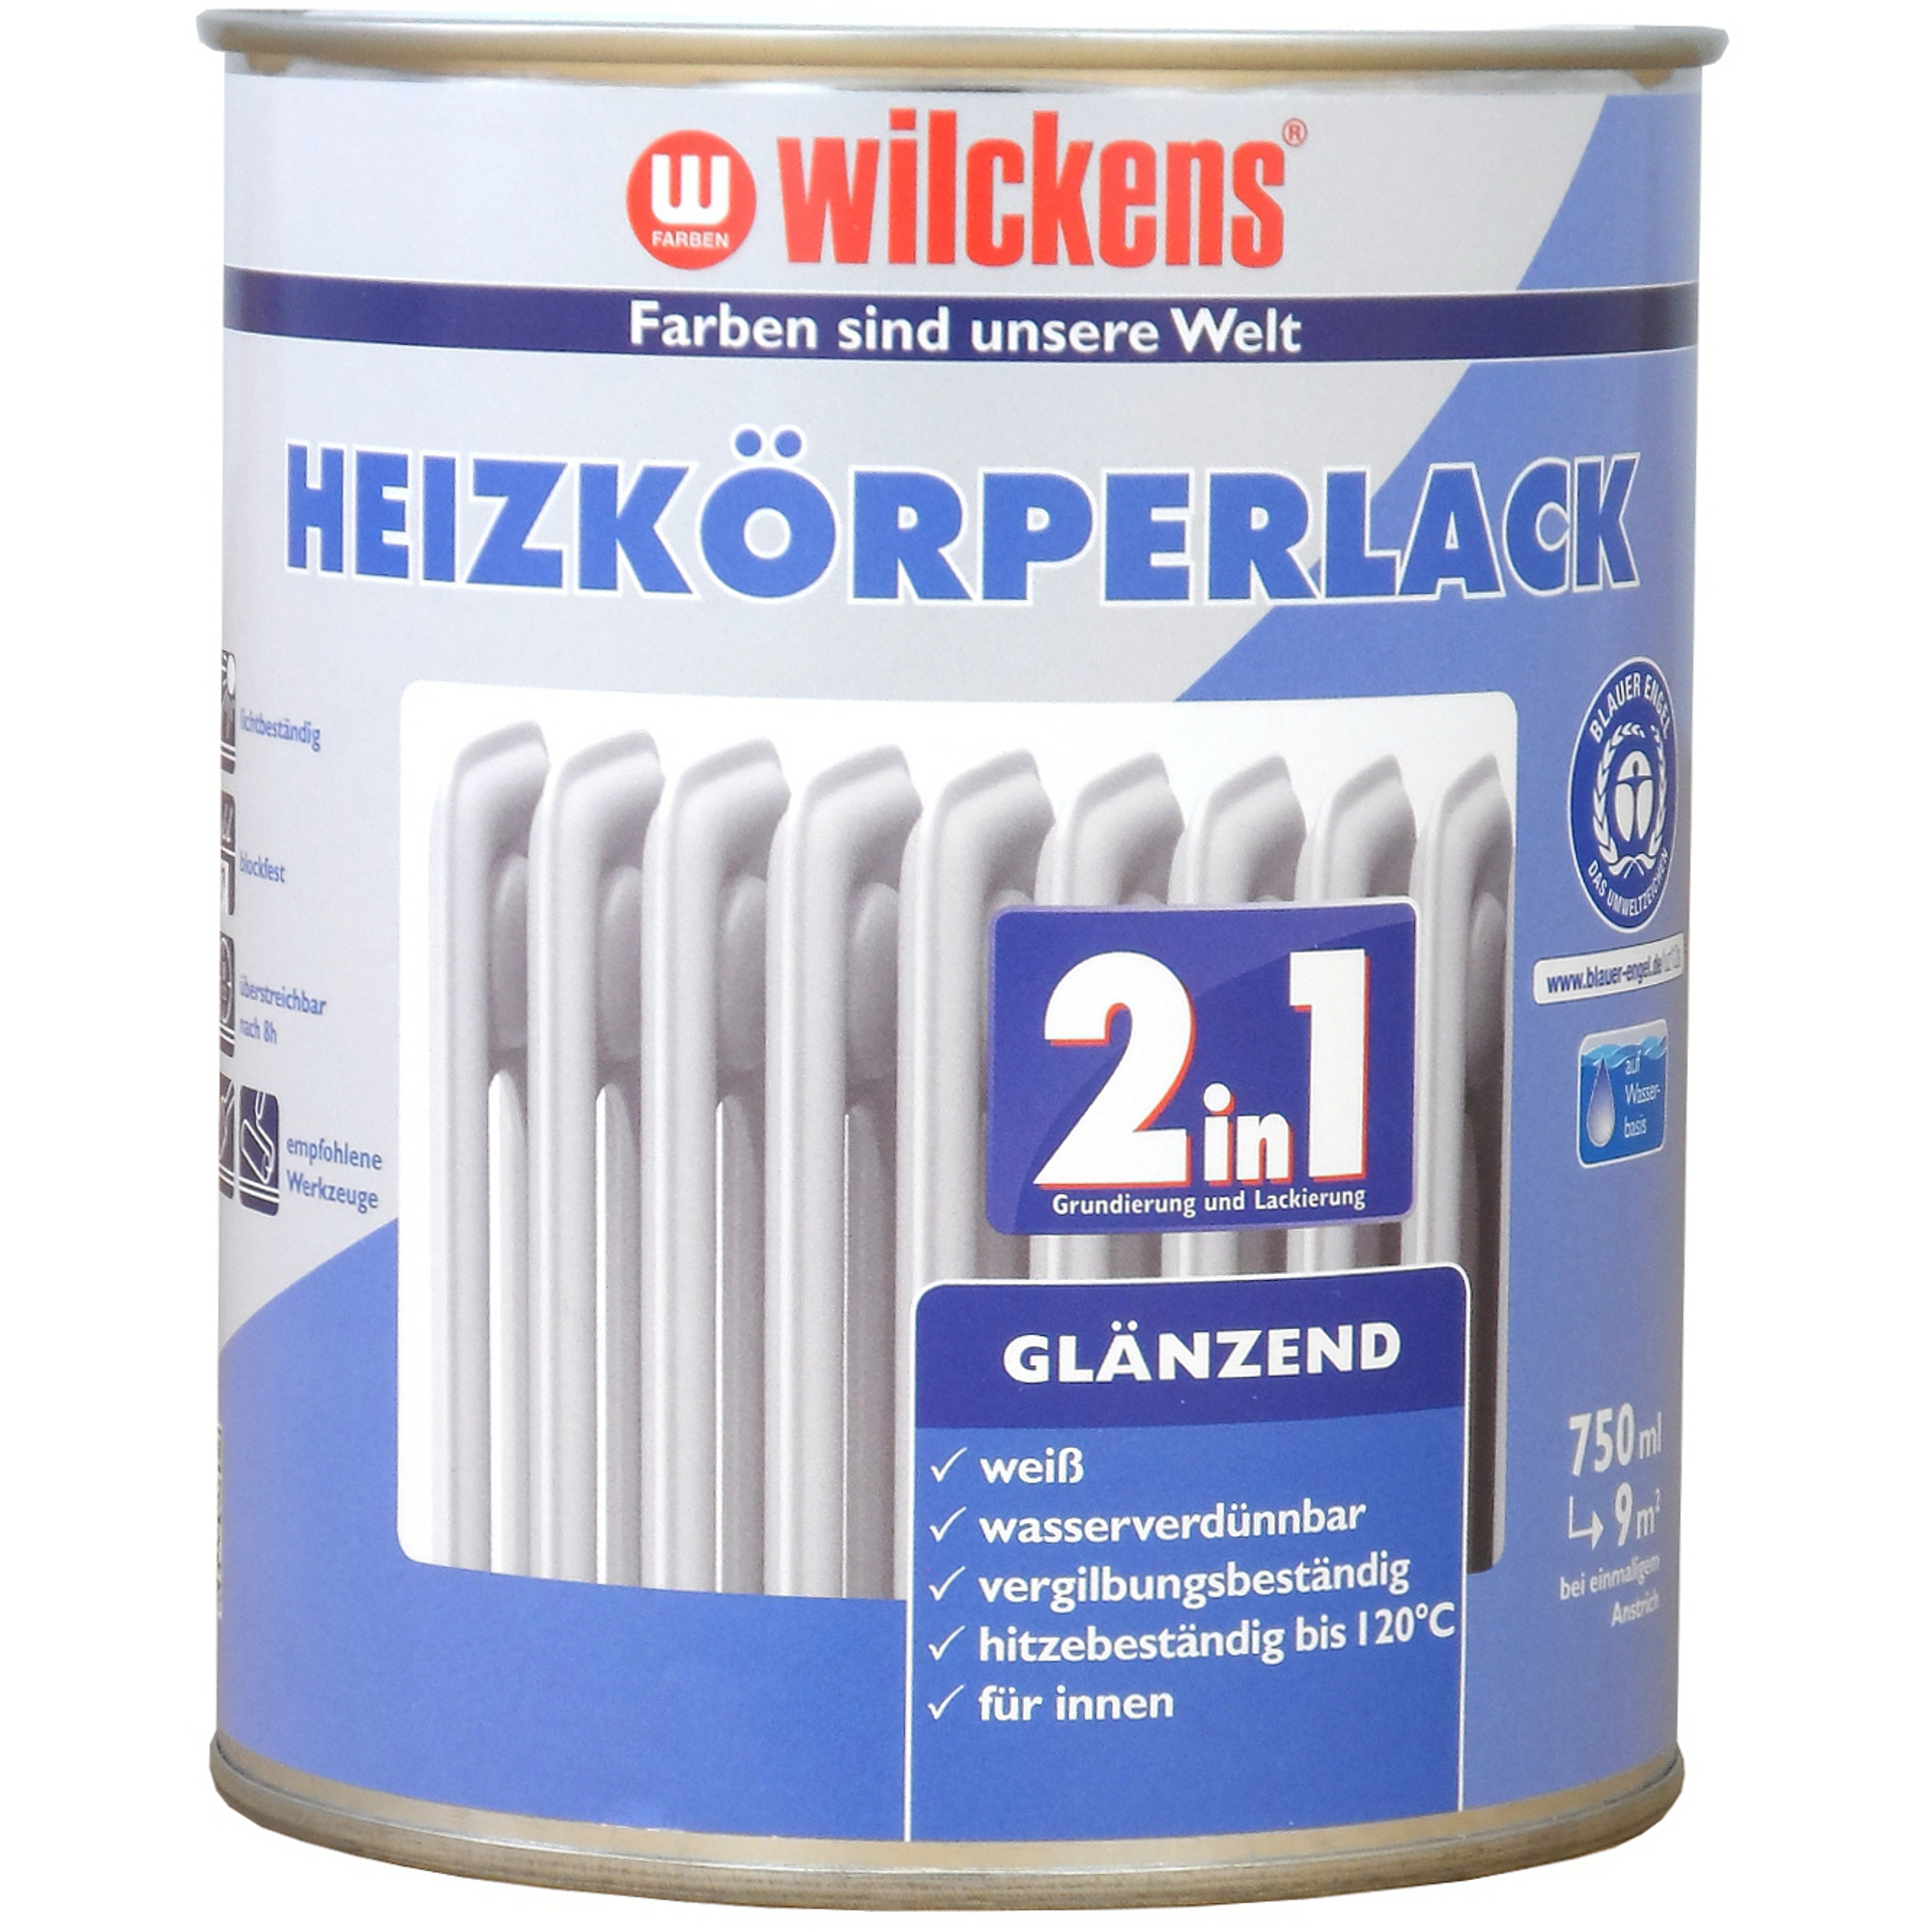 2in1 Heizkörperlack weiß glänzend 750 ml + product picture